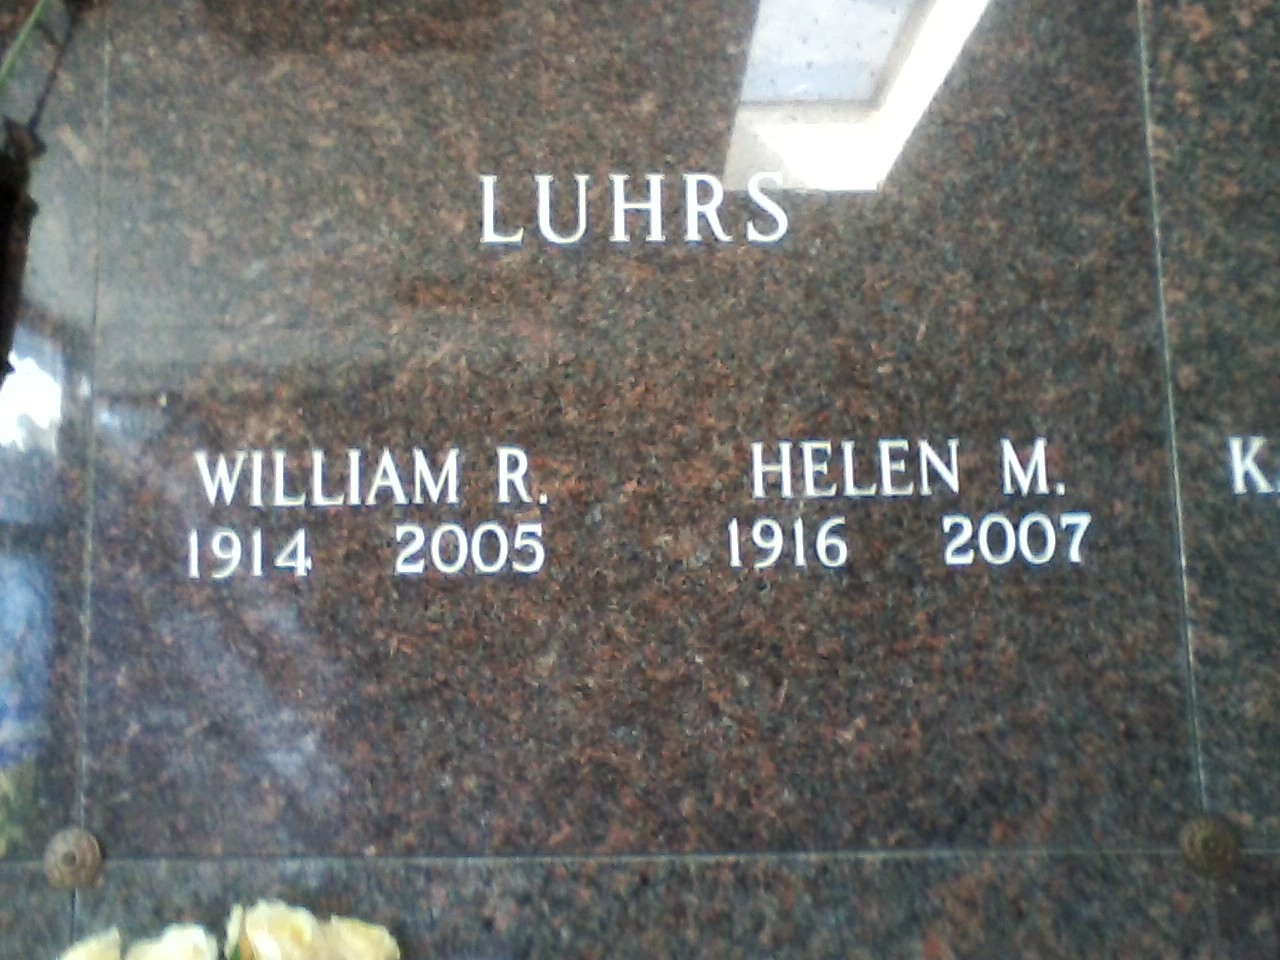 Helen Hargreaves/ Luhrs & husband William Luhrs Gravestone 